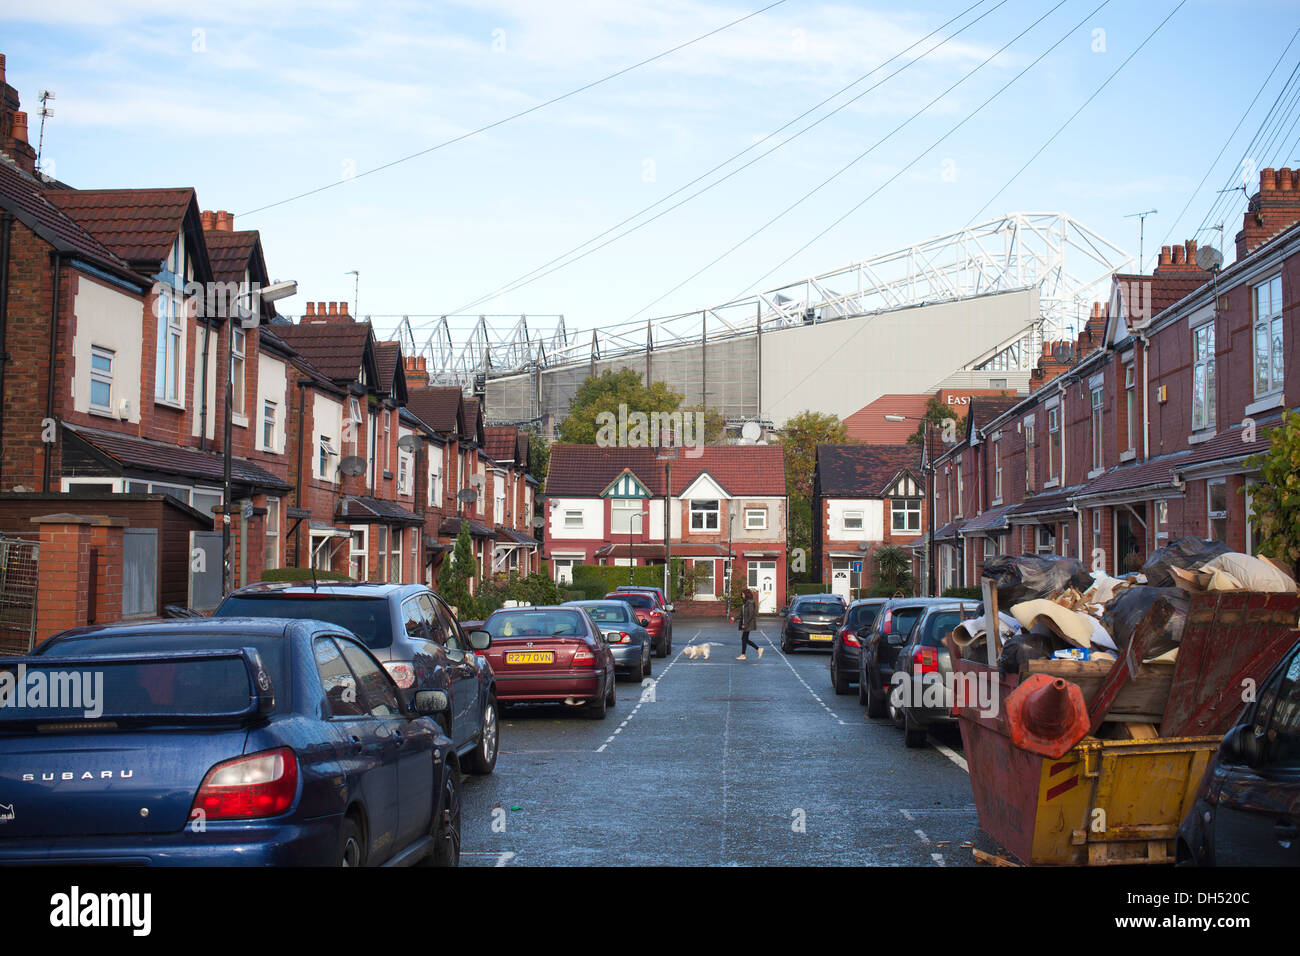 Rebhuhn Straße, mit Blick auf Old Trafford, Manchester United Fußballplatz, Manchester, England, UK Stockfoto